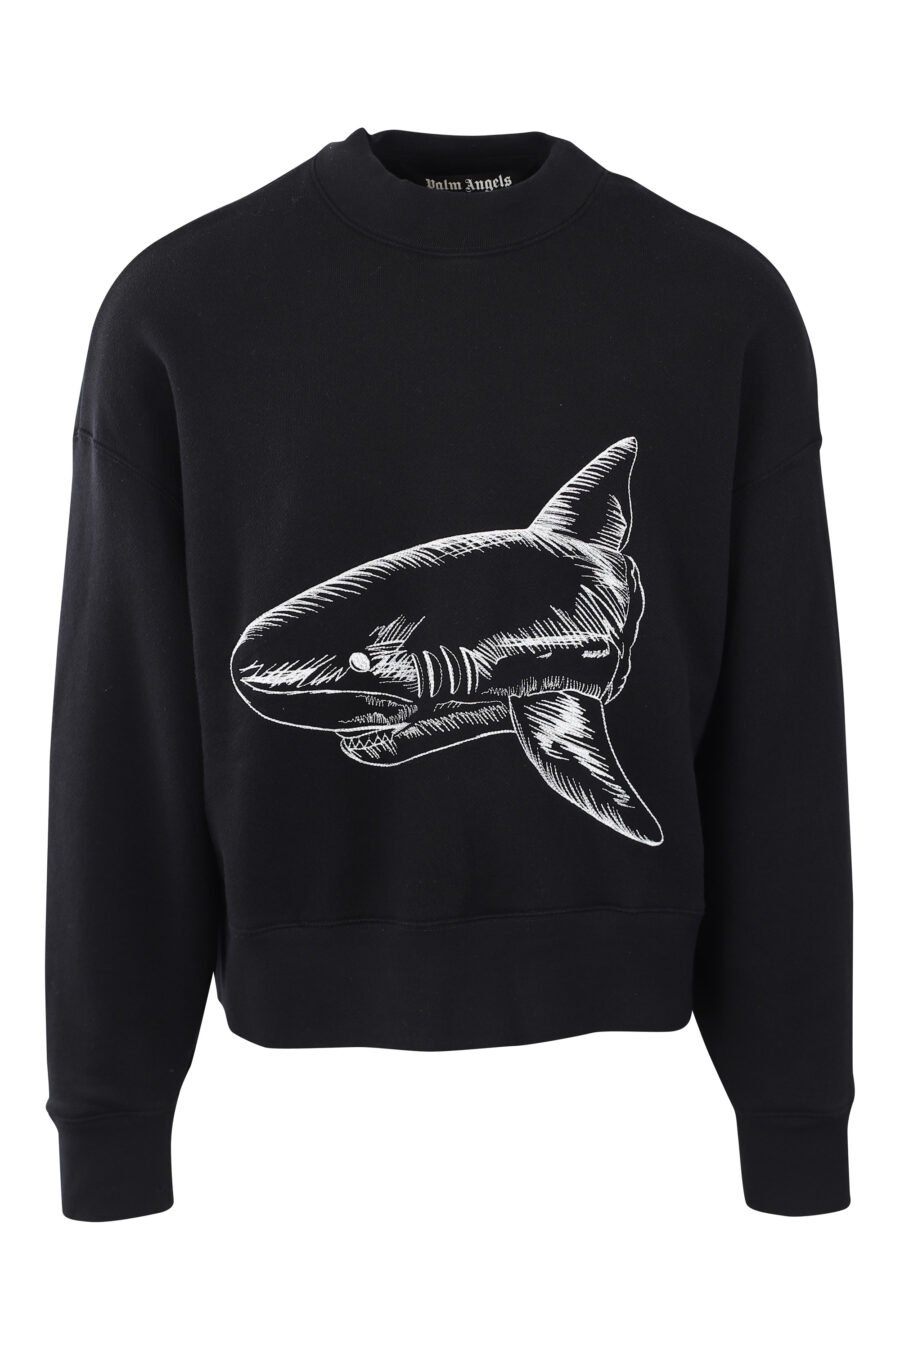 Camisola preta com tubarão e logótipo bordados a branco nas costas - IMG 2565